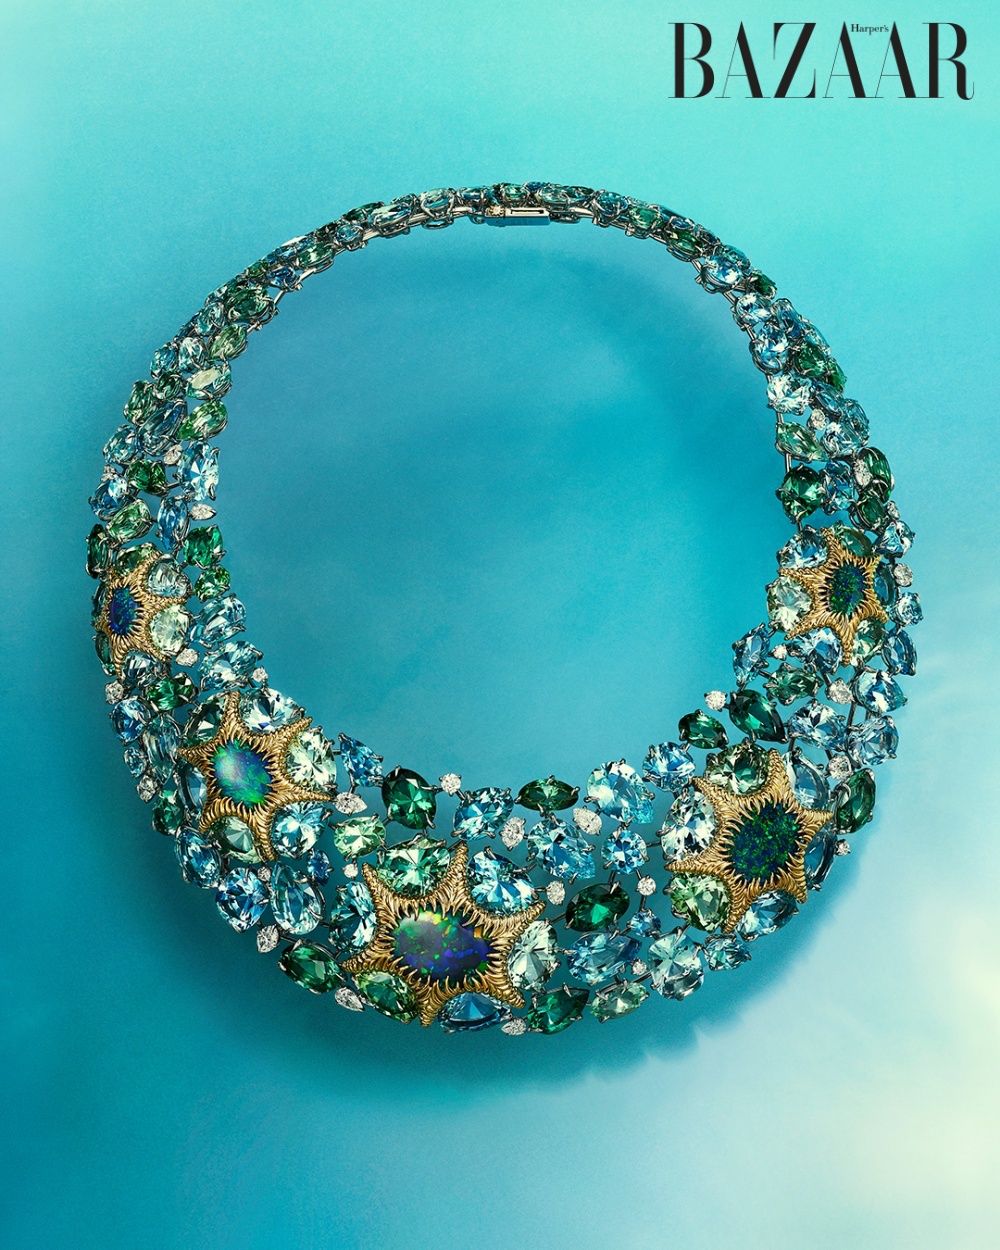 Vòng cổ chế tác từ bạch kim, vàng vàng 18k với đá opal đen, aquamarine, beryl, tourmaline và kim cương, Tiffany & Co. Blue Book 2023 